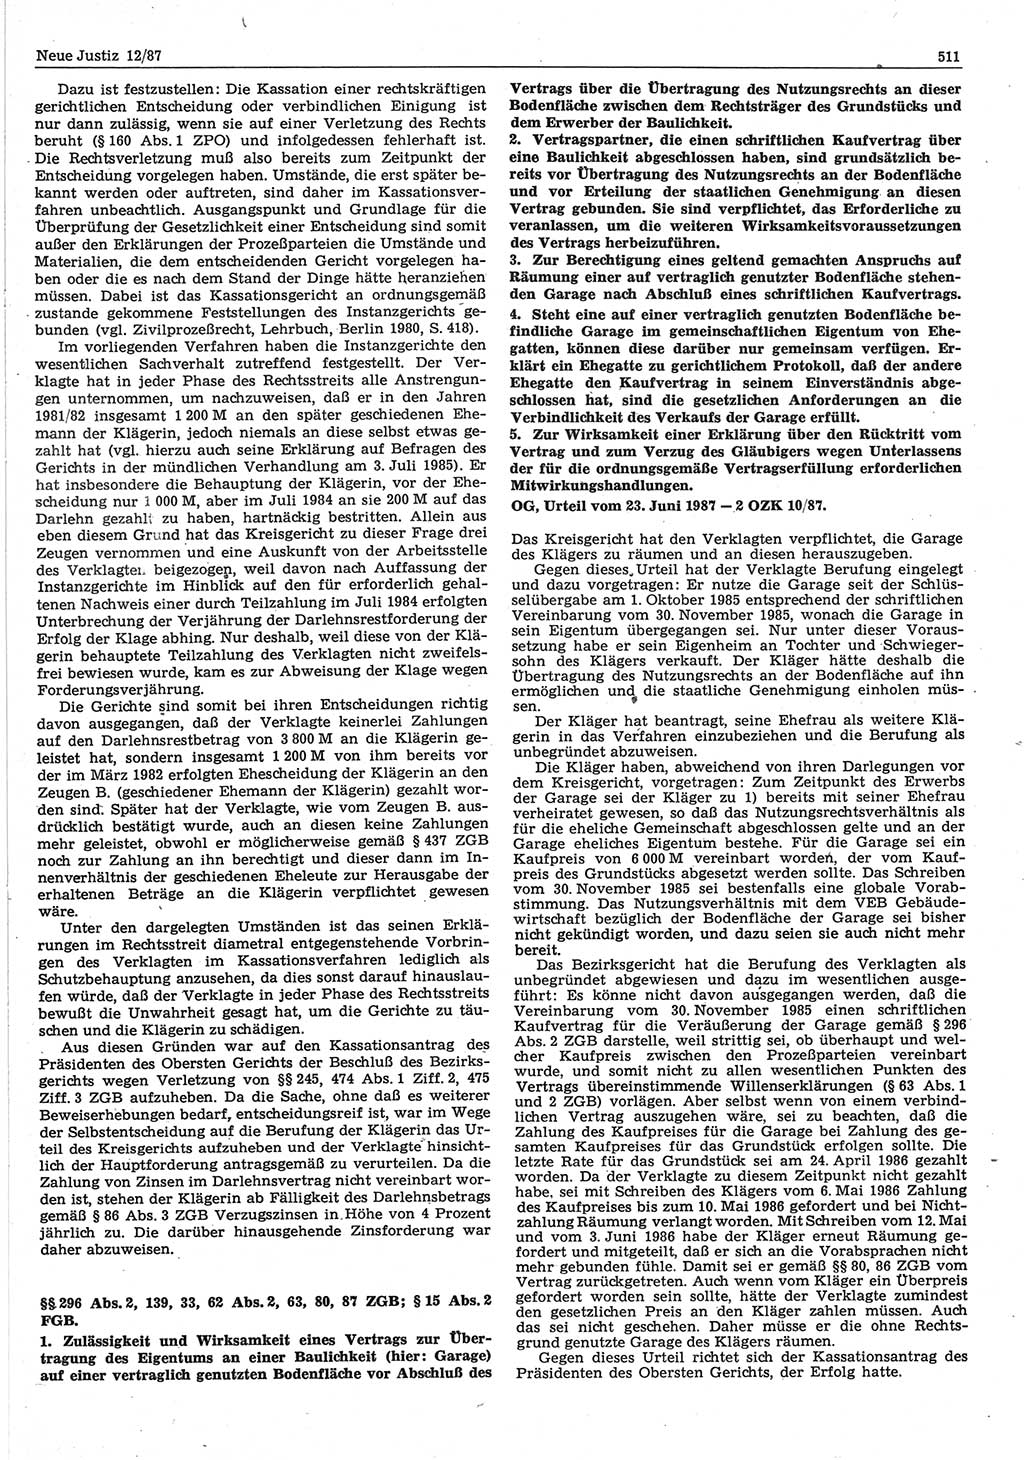 Neue Justiz (NJ), Zeitschrift für sozialistisches Recht und Gesetzlichkeit [Deutsche Demokratische Republik (DDR)], 41. Jahrgang 1987, Seite 511 (NJ DDR 1987, S. 511)